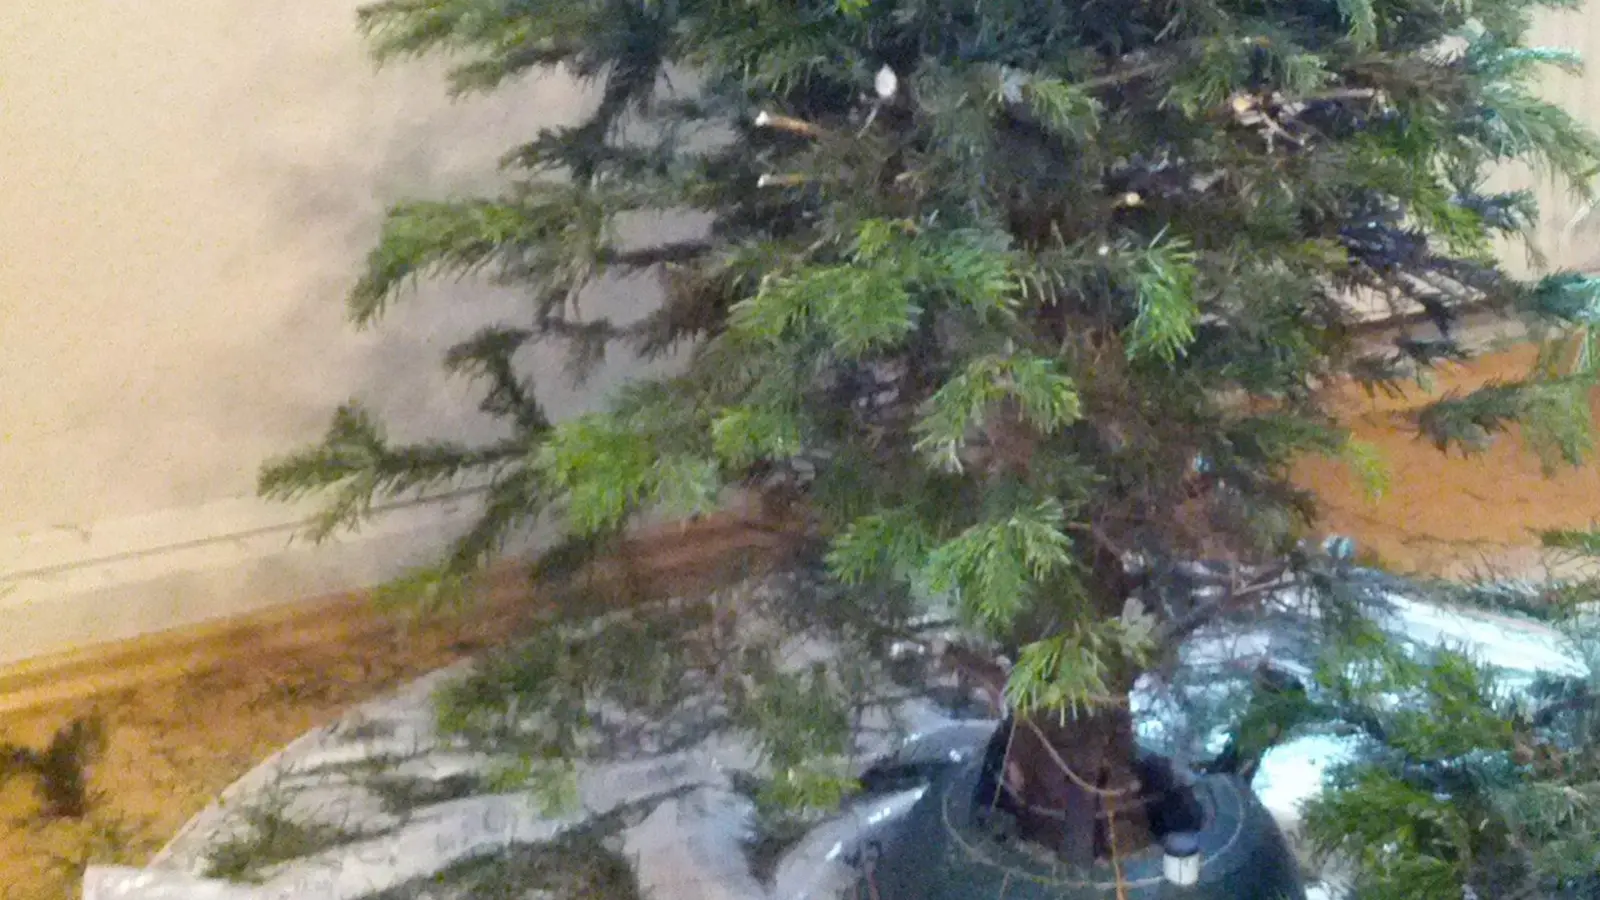 Wohin mit dem Weihnachtsbaum in Taucha? (Foto: taucha-kompakt.de)